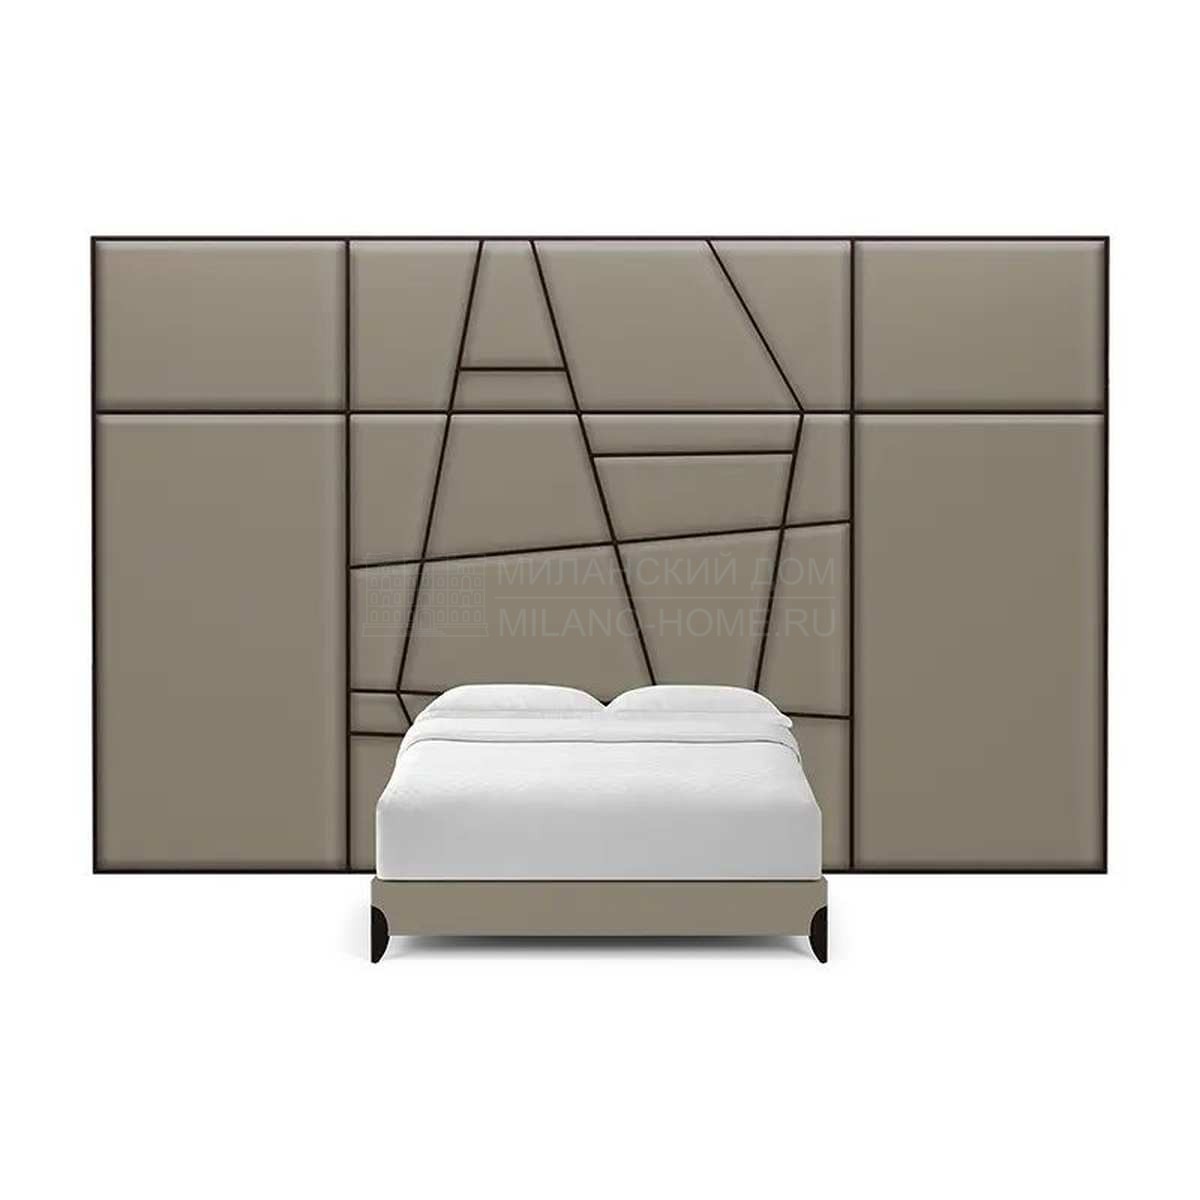 Двуспальная кровать Geometrique low bed  из США фабрики CHRISTOPHER GUY